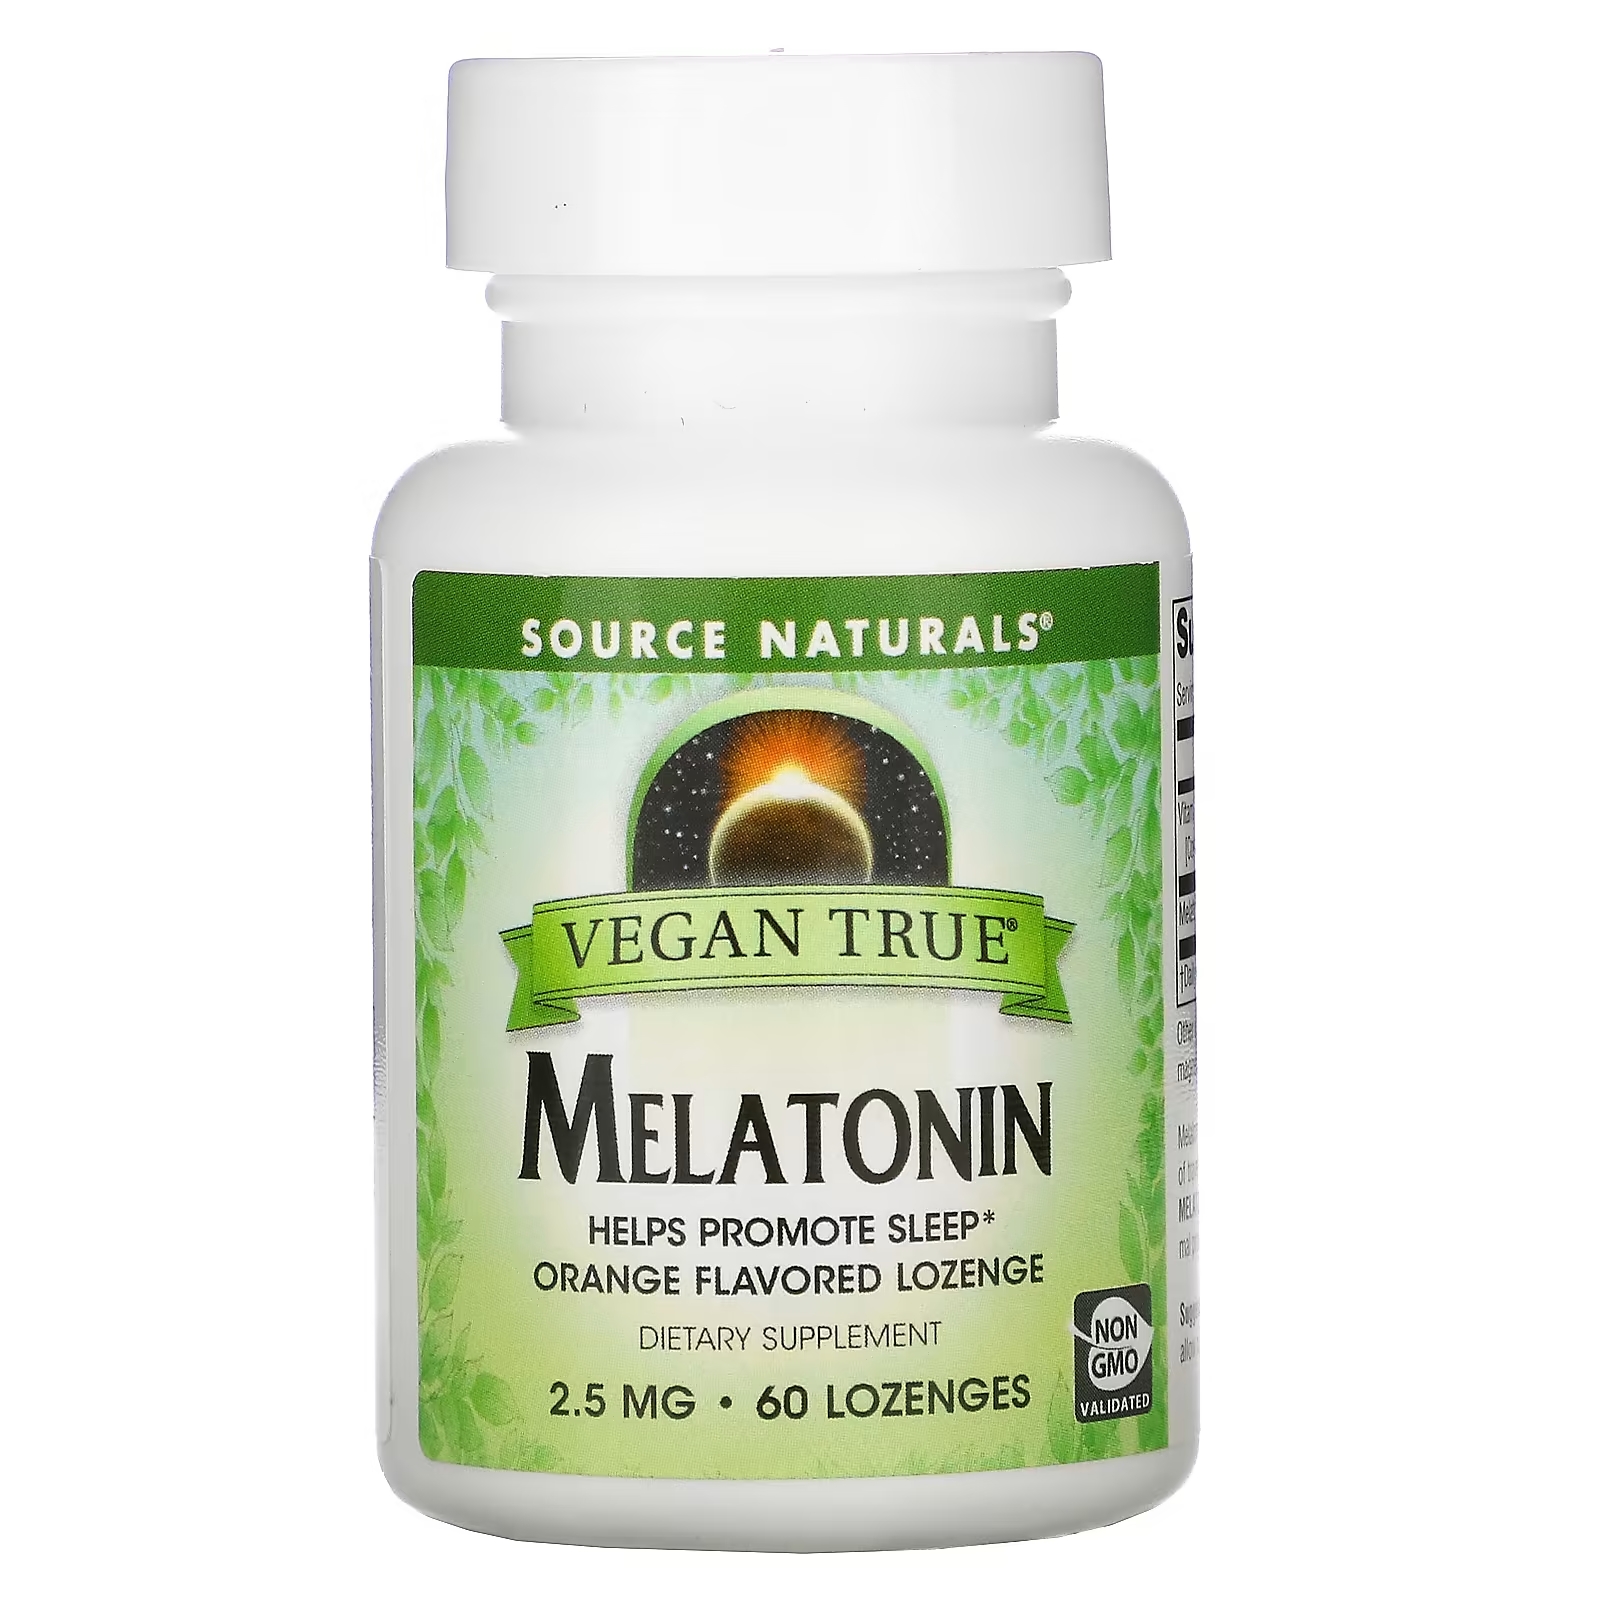 Source Naturals Истинно Веган Мелатонин Апельсин 2,5 мг, 60 таблеток source naturals мелатонин 3 мг 60 таблеток